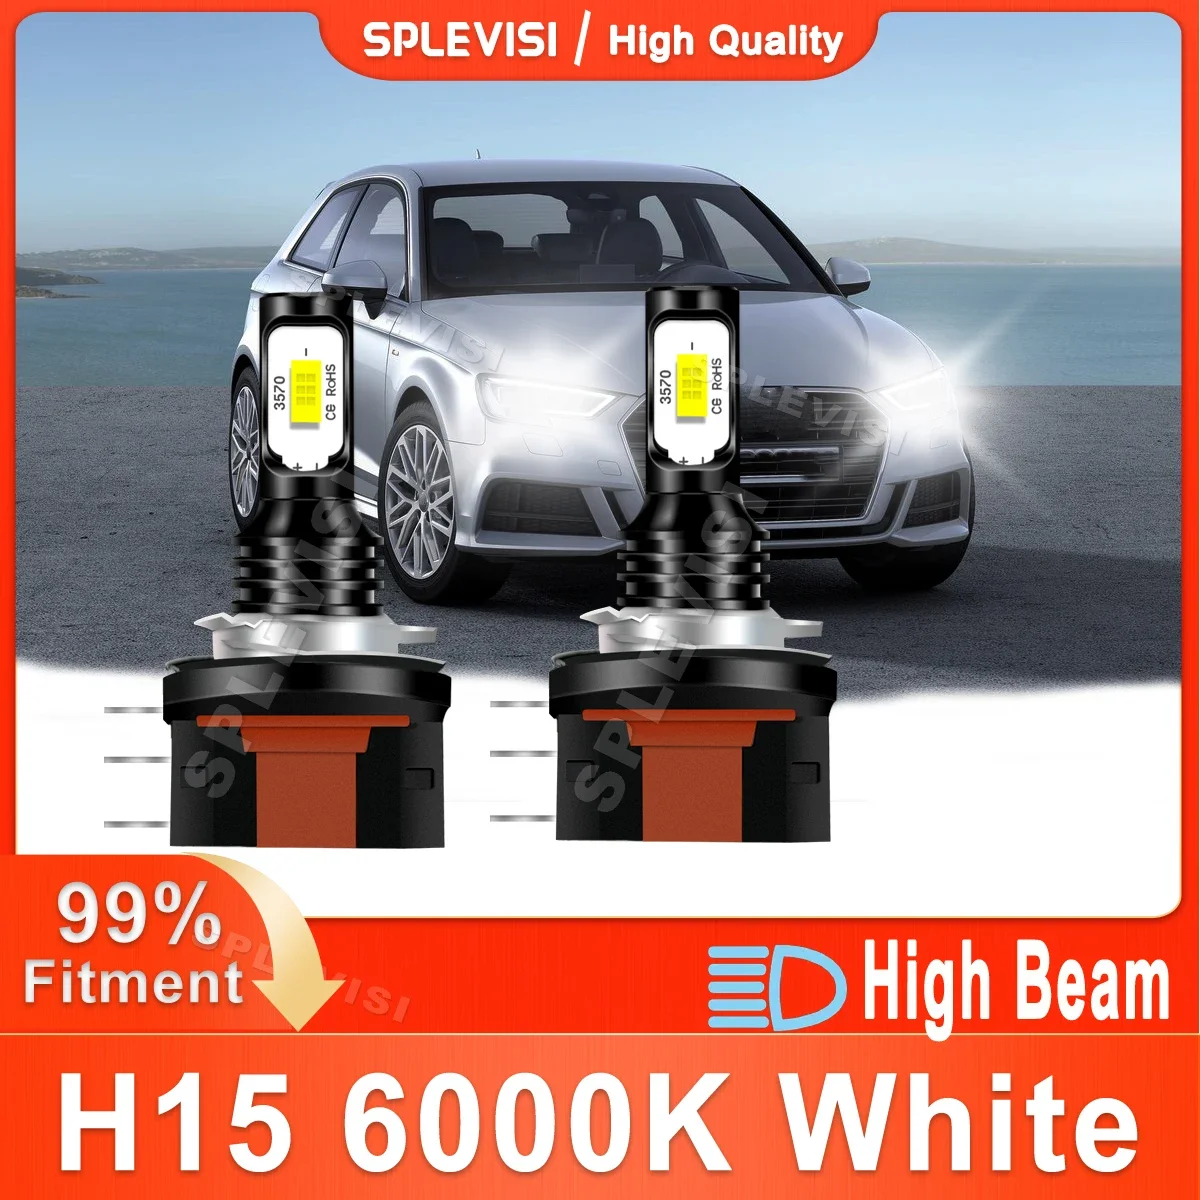 

2x Luces LED Para Auto For Audi A1 8X1 8XK /A3 8V1 8VK /A3 8V7 8V1 8VM 8VA /A3 8V LED Headlight High Beam H15 70W Xenon White